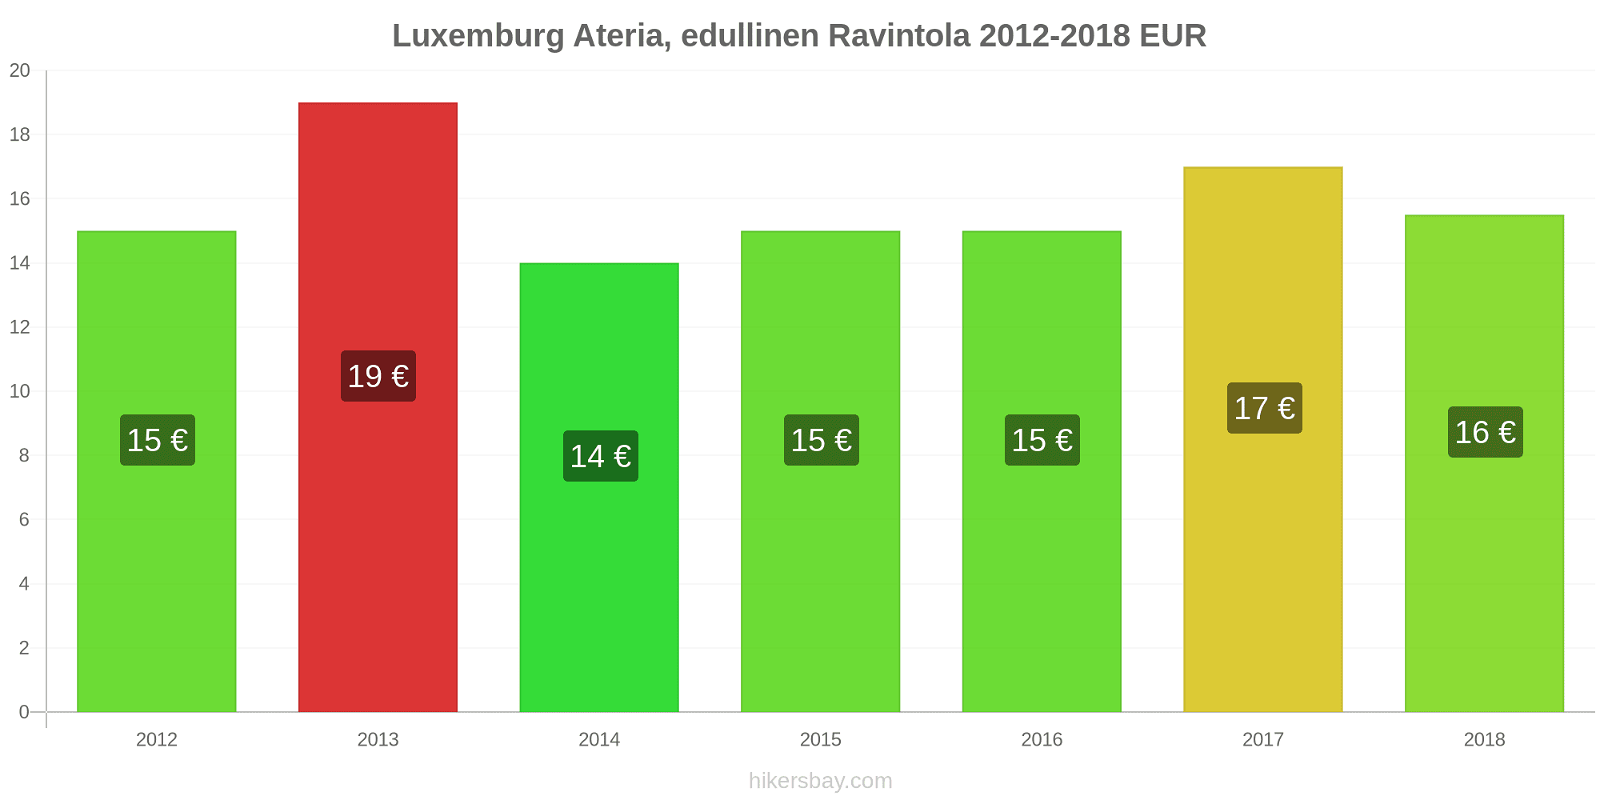 Luxemburg hintojen muutokset Ateria edullisessa ravintolassa hikersbay.com